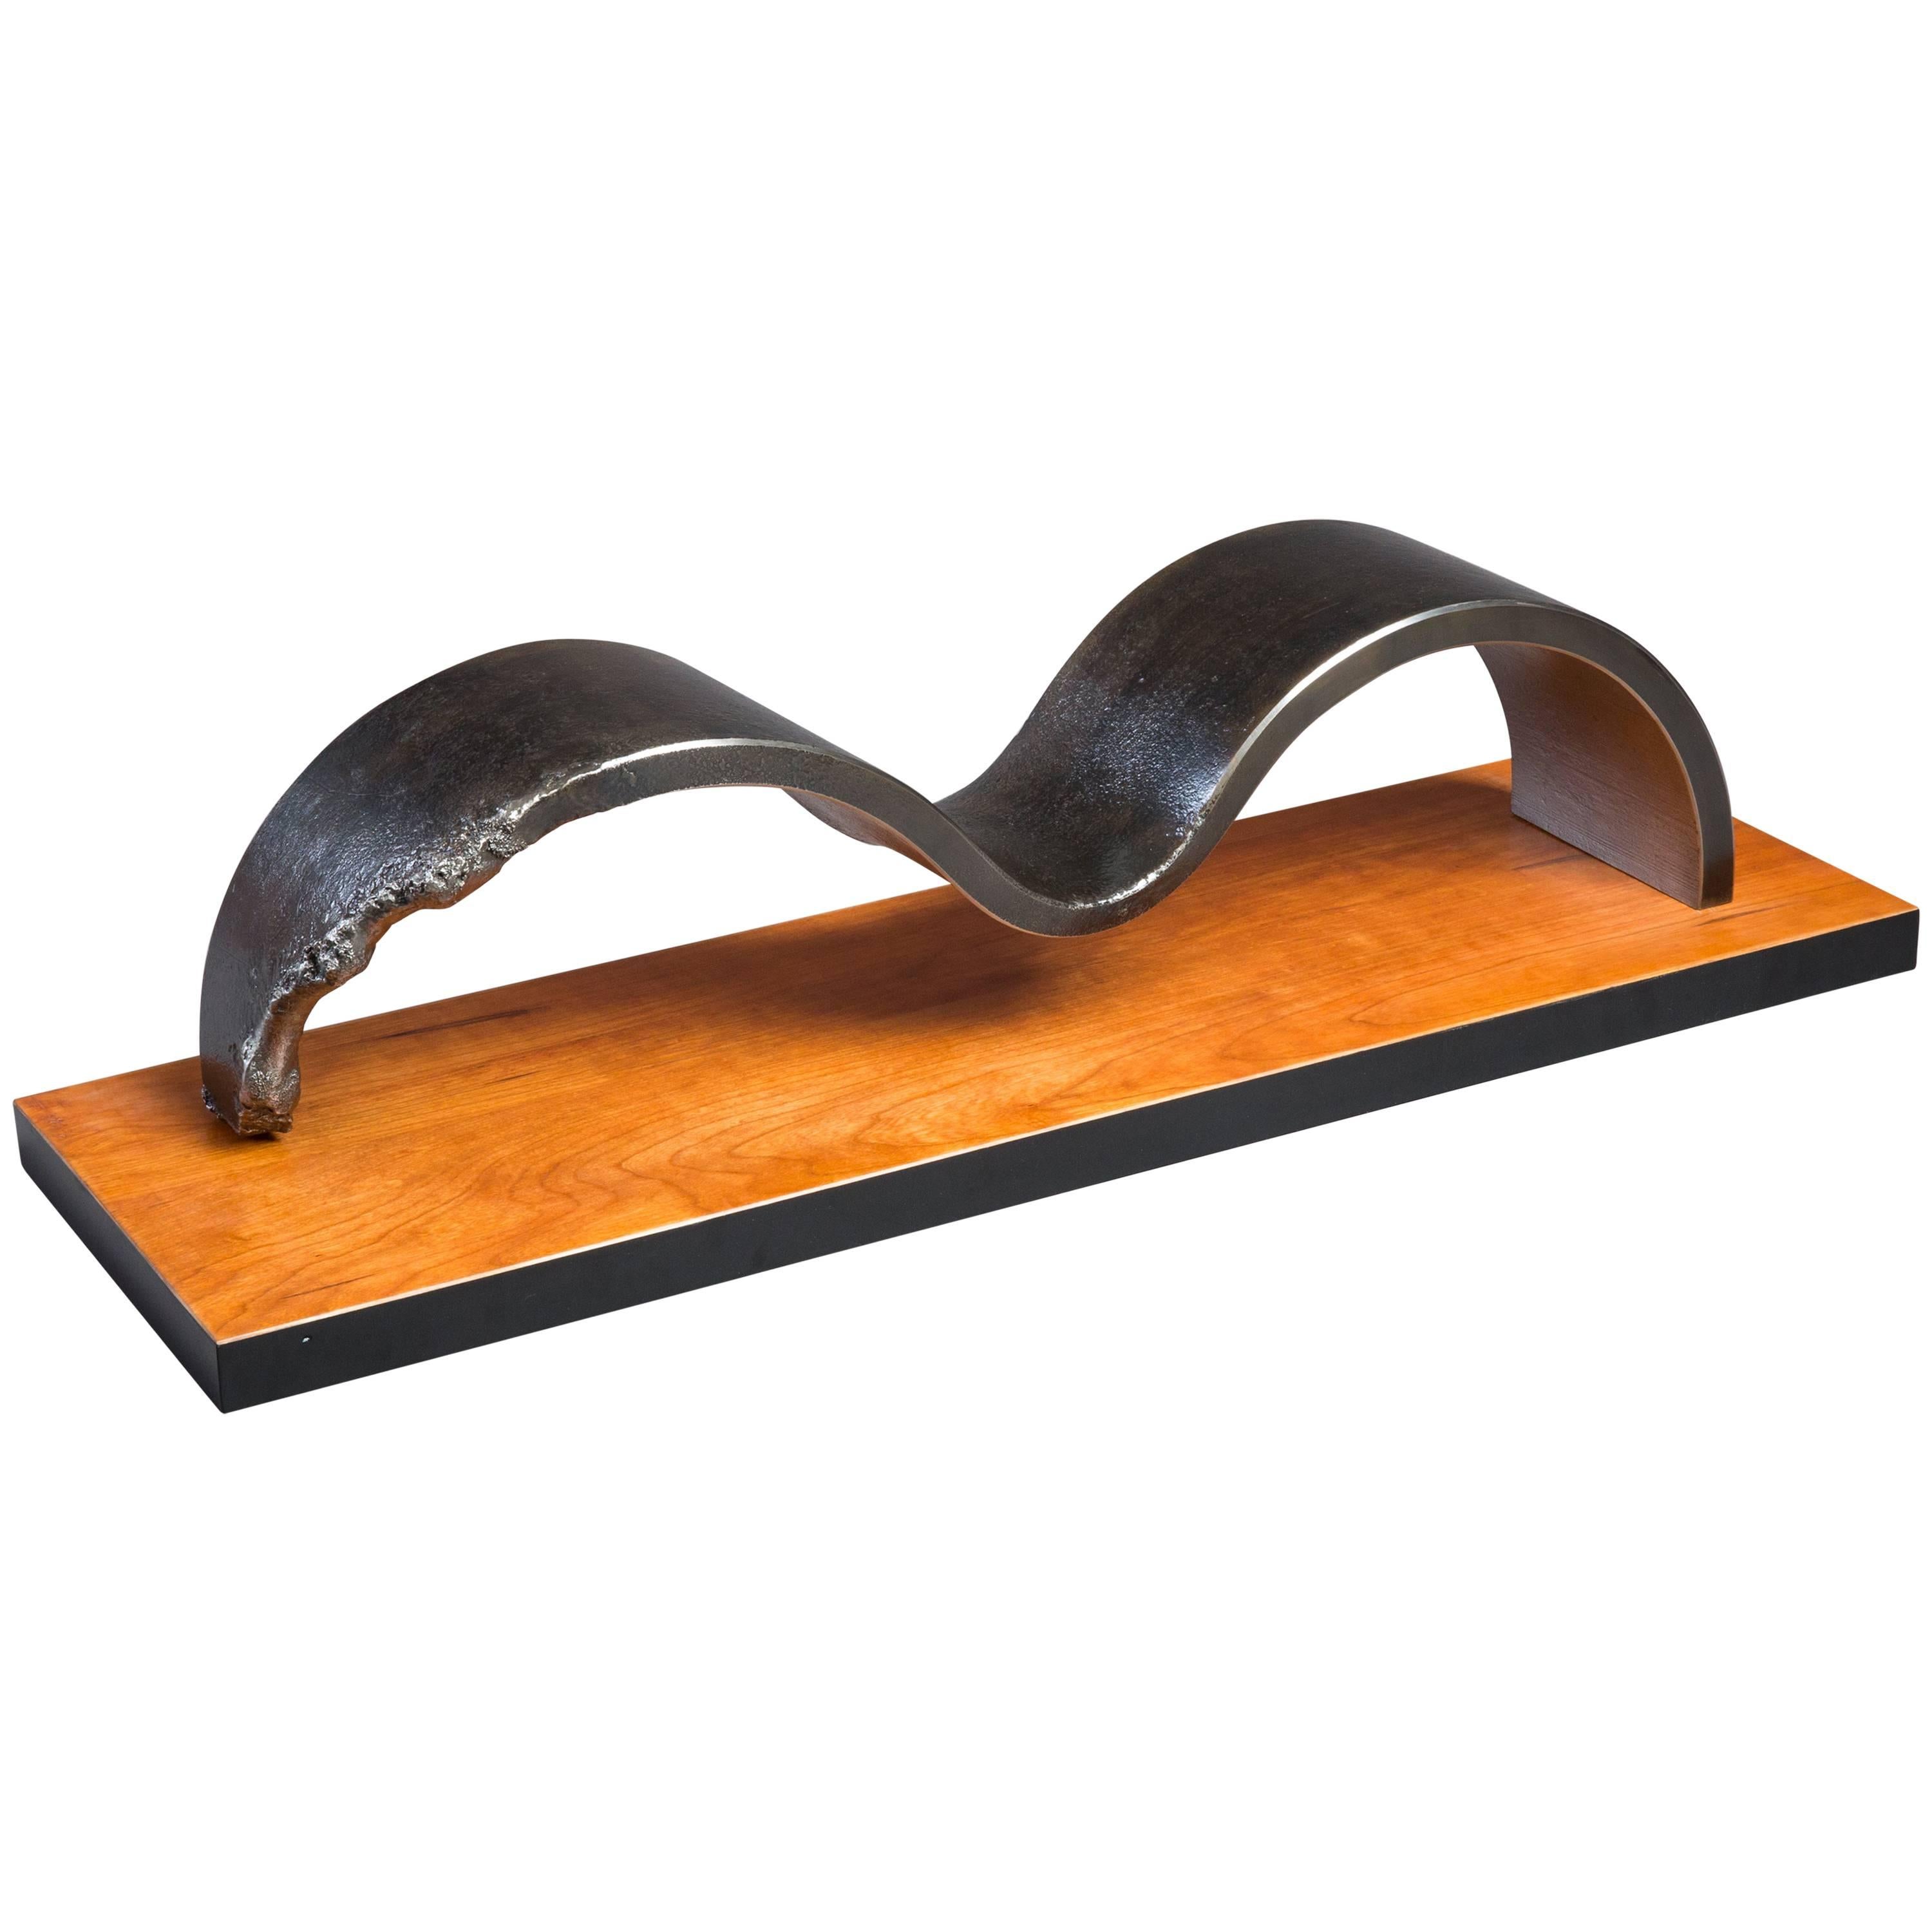 Sculpture de table unique en acier et bois avec patine forgée à la main, unique en son genre